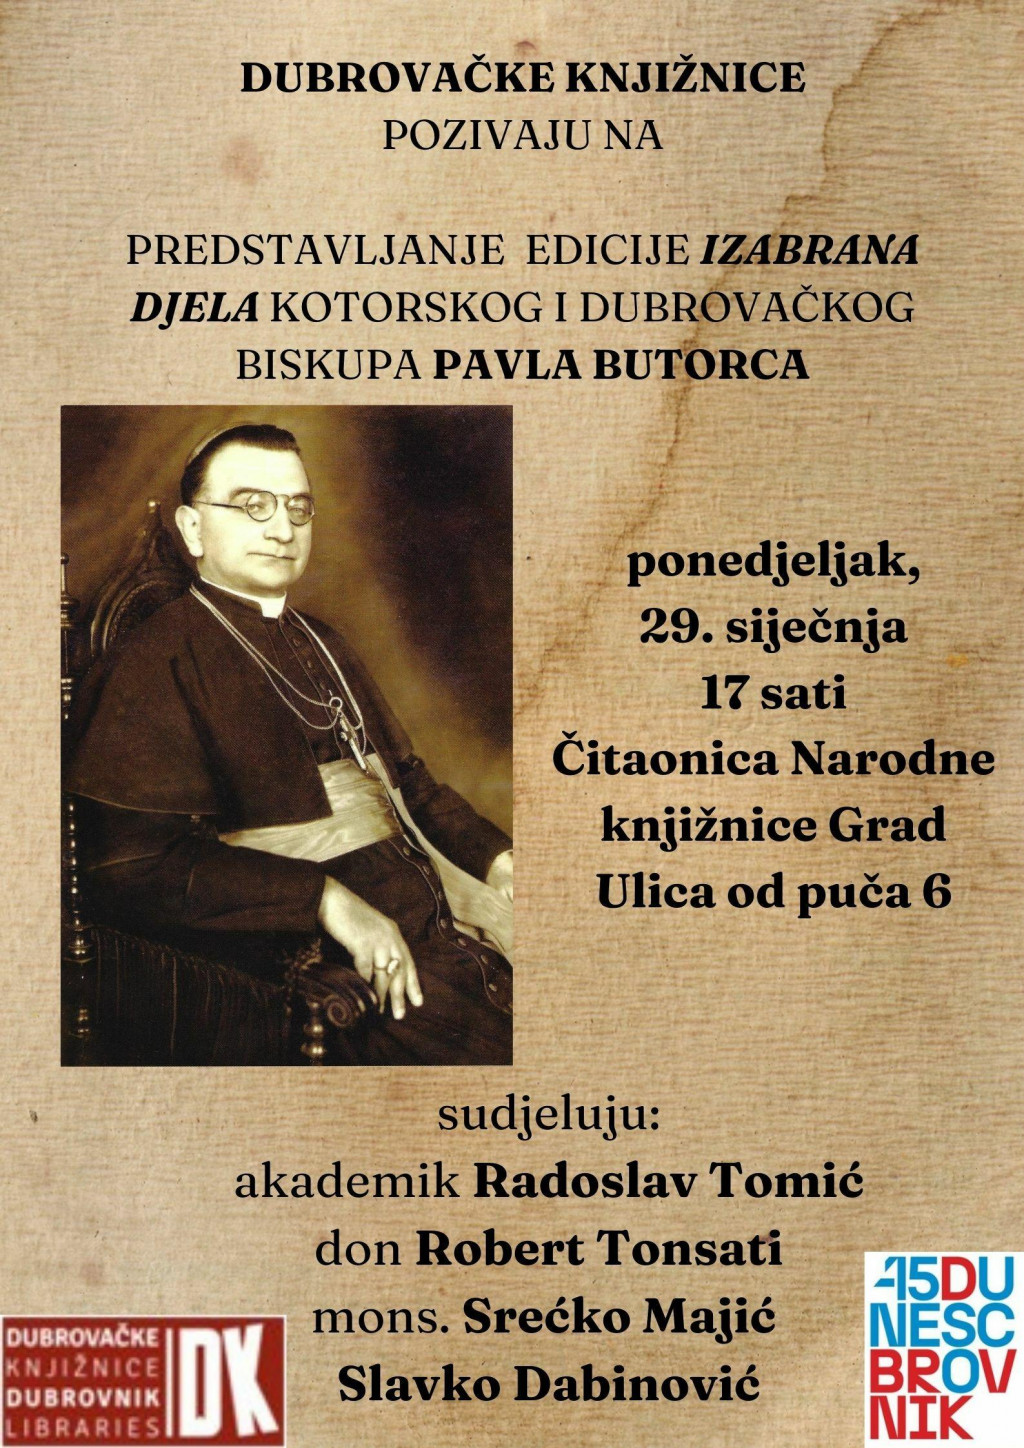 &lt;p&gt;Predstavljanje edicije Izabrana djela kotorskog i dubrovačkog biskupa Pavla Butorca&lt;/p&gt;